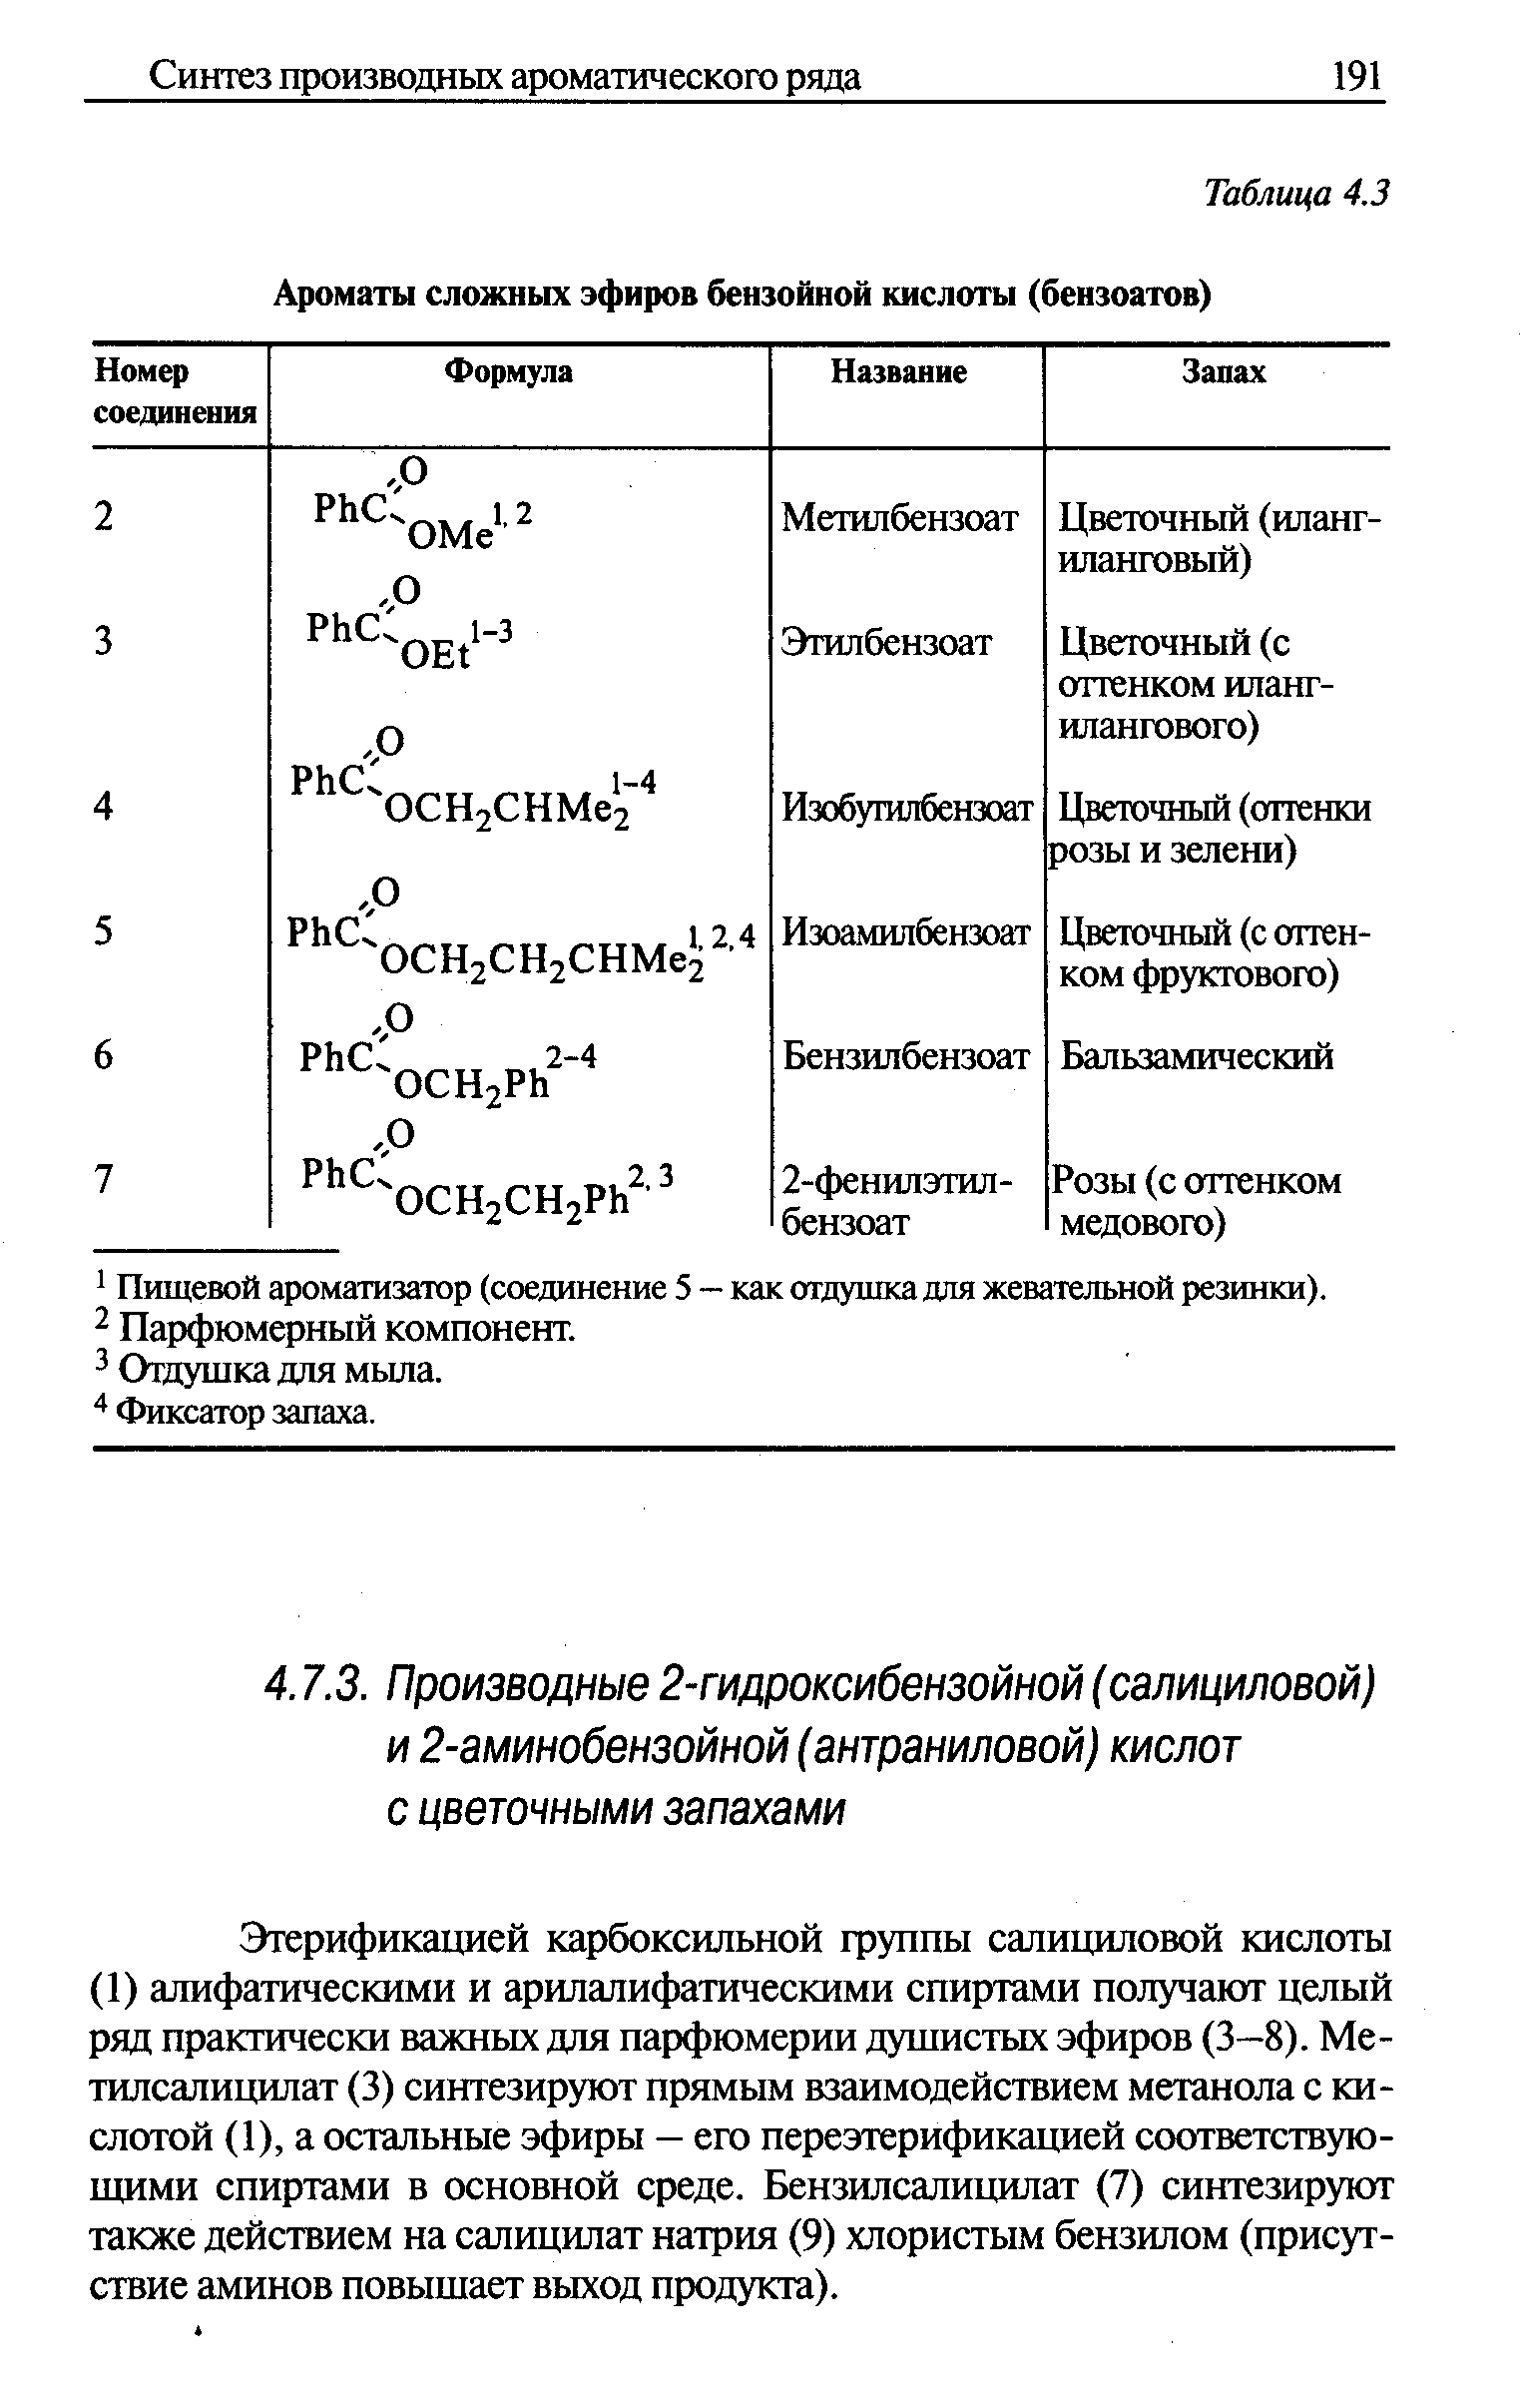 Этерификацией карбоксильной группы салицилоюй кислоты (1) алифатическими и арилалифатическими спиртами получают целый ряд практически важных для парфюмерии душистых эфиров (3—8). Ме-тилсалицилат (3) синтезируют прямым взаимодействием метанола с кислотой (1), а остальные эфиры — его переэтерификацией соответствующими спиртами в основной среде. Бензилсалицилат (7) синтезируют также действием на салицилат натрия (9) хлористым бензилом (присутствие аминов повышает выход продукта).